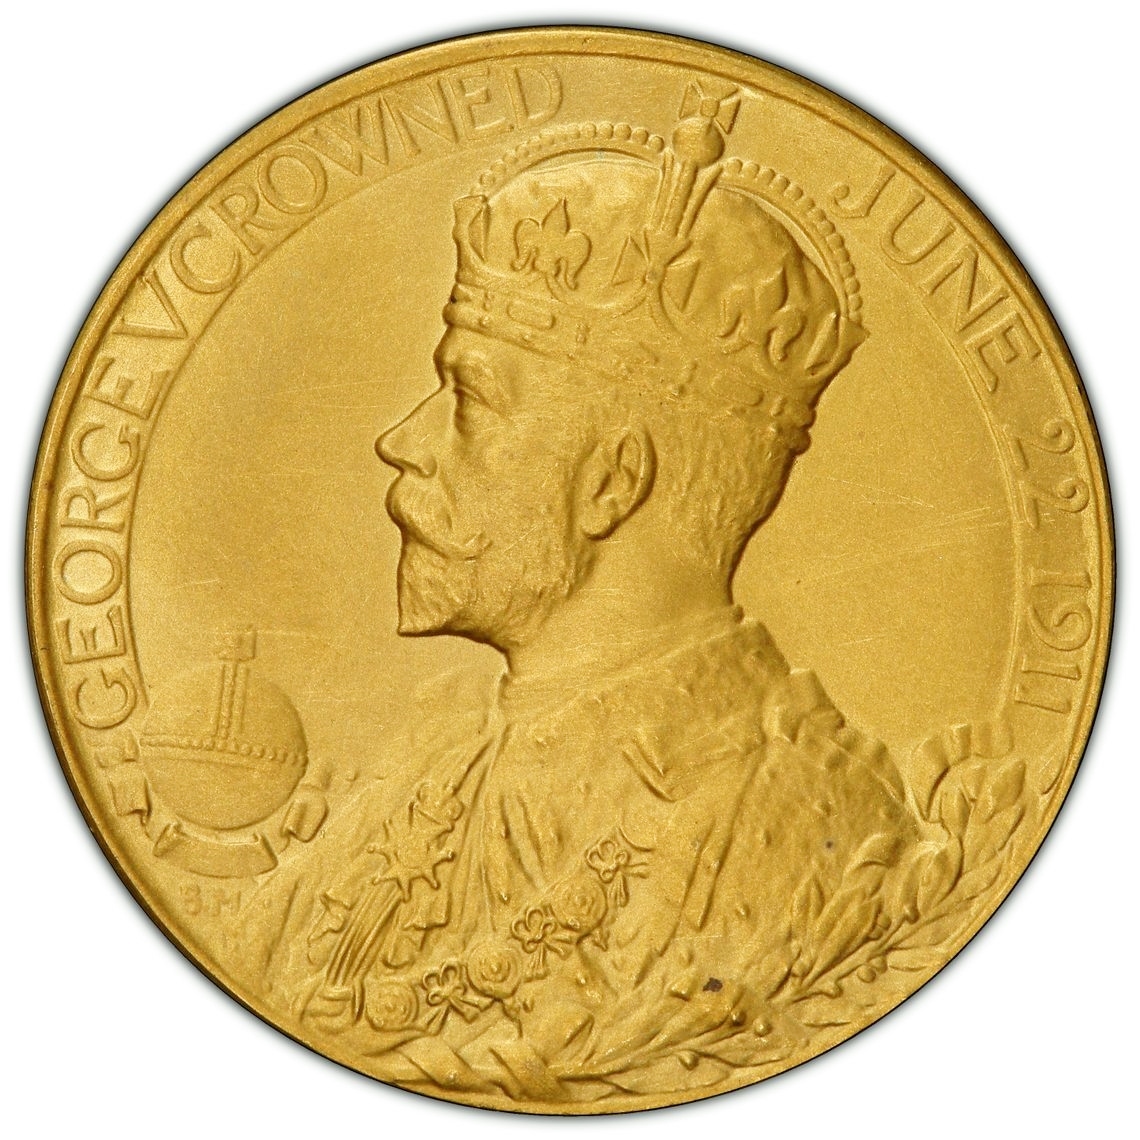 入手困難 発行100枚 1911年 英国 イギリス ジョージ5世 メアリー皇后 戴冠式 金メダル ゴールドメダル PCGS SP63 アンティークコイン_画像5